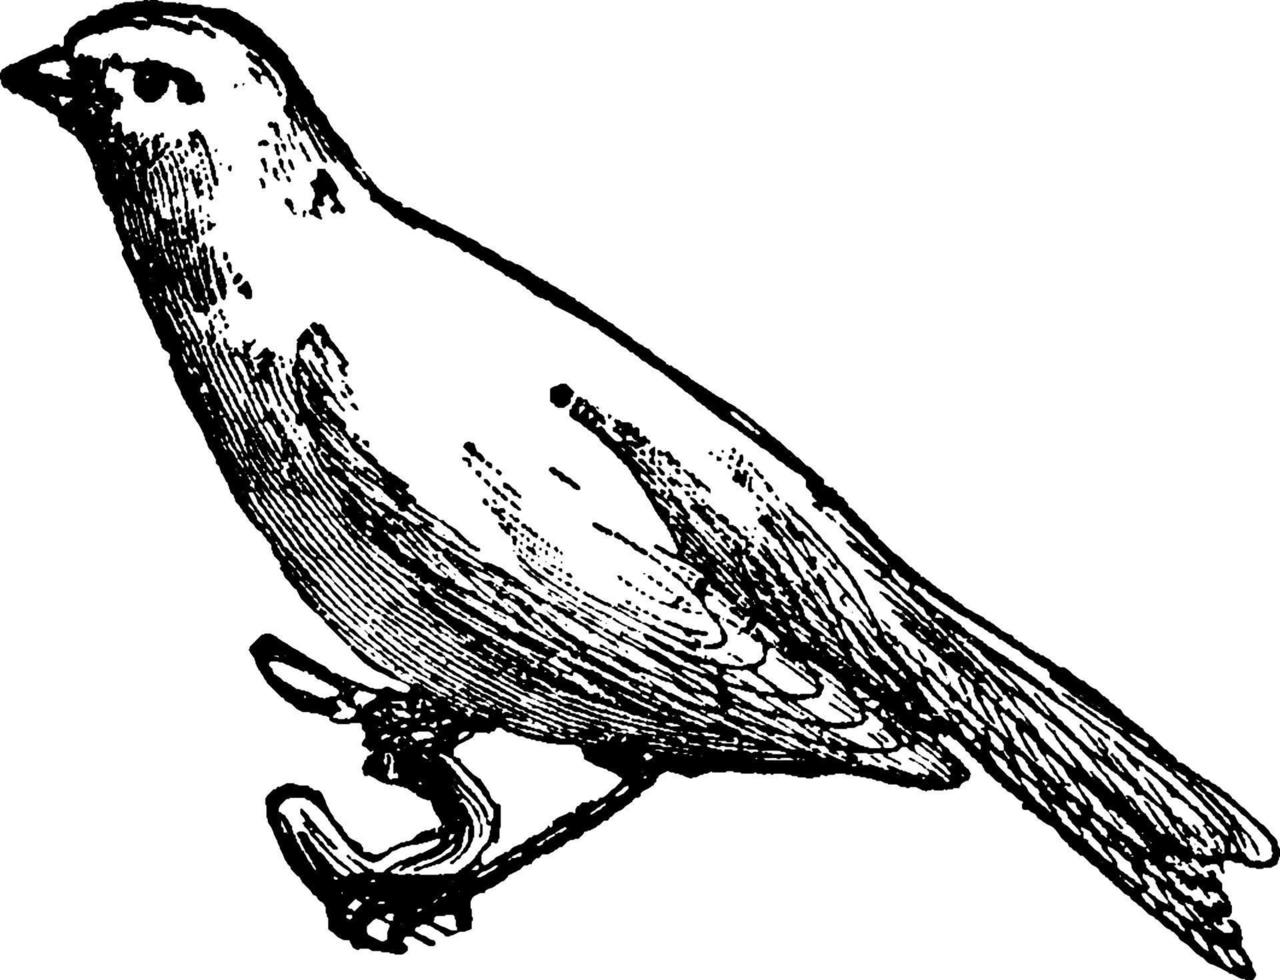 pássaro canário, canaria domestica séria, ilustração vintage vetor